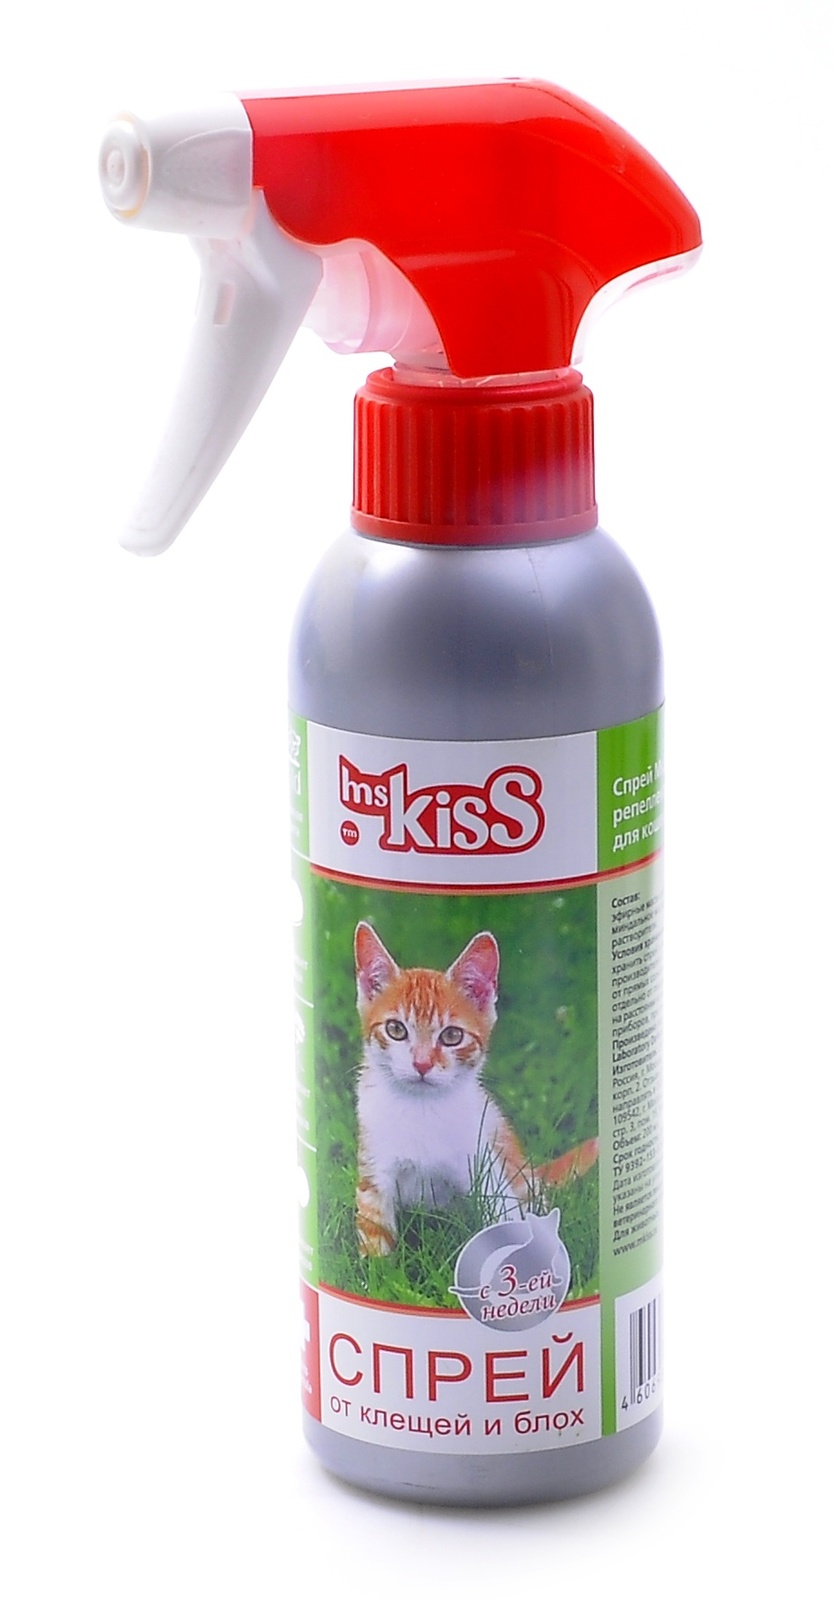 Ms.Kiss спрей от блох и клещей для кошек (200 г)